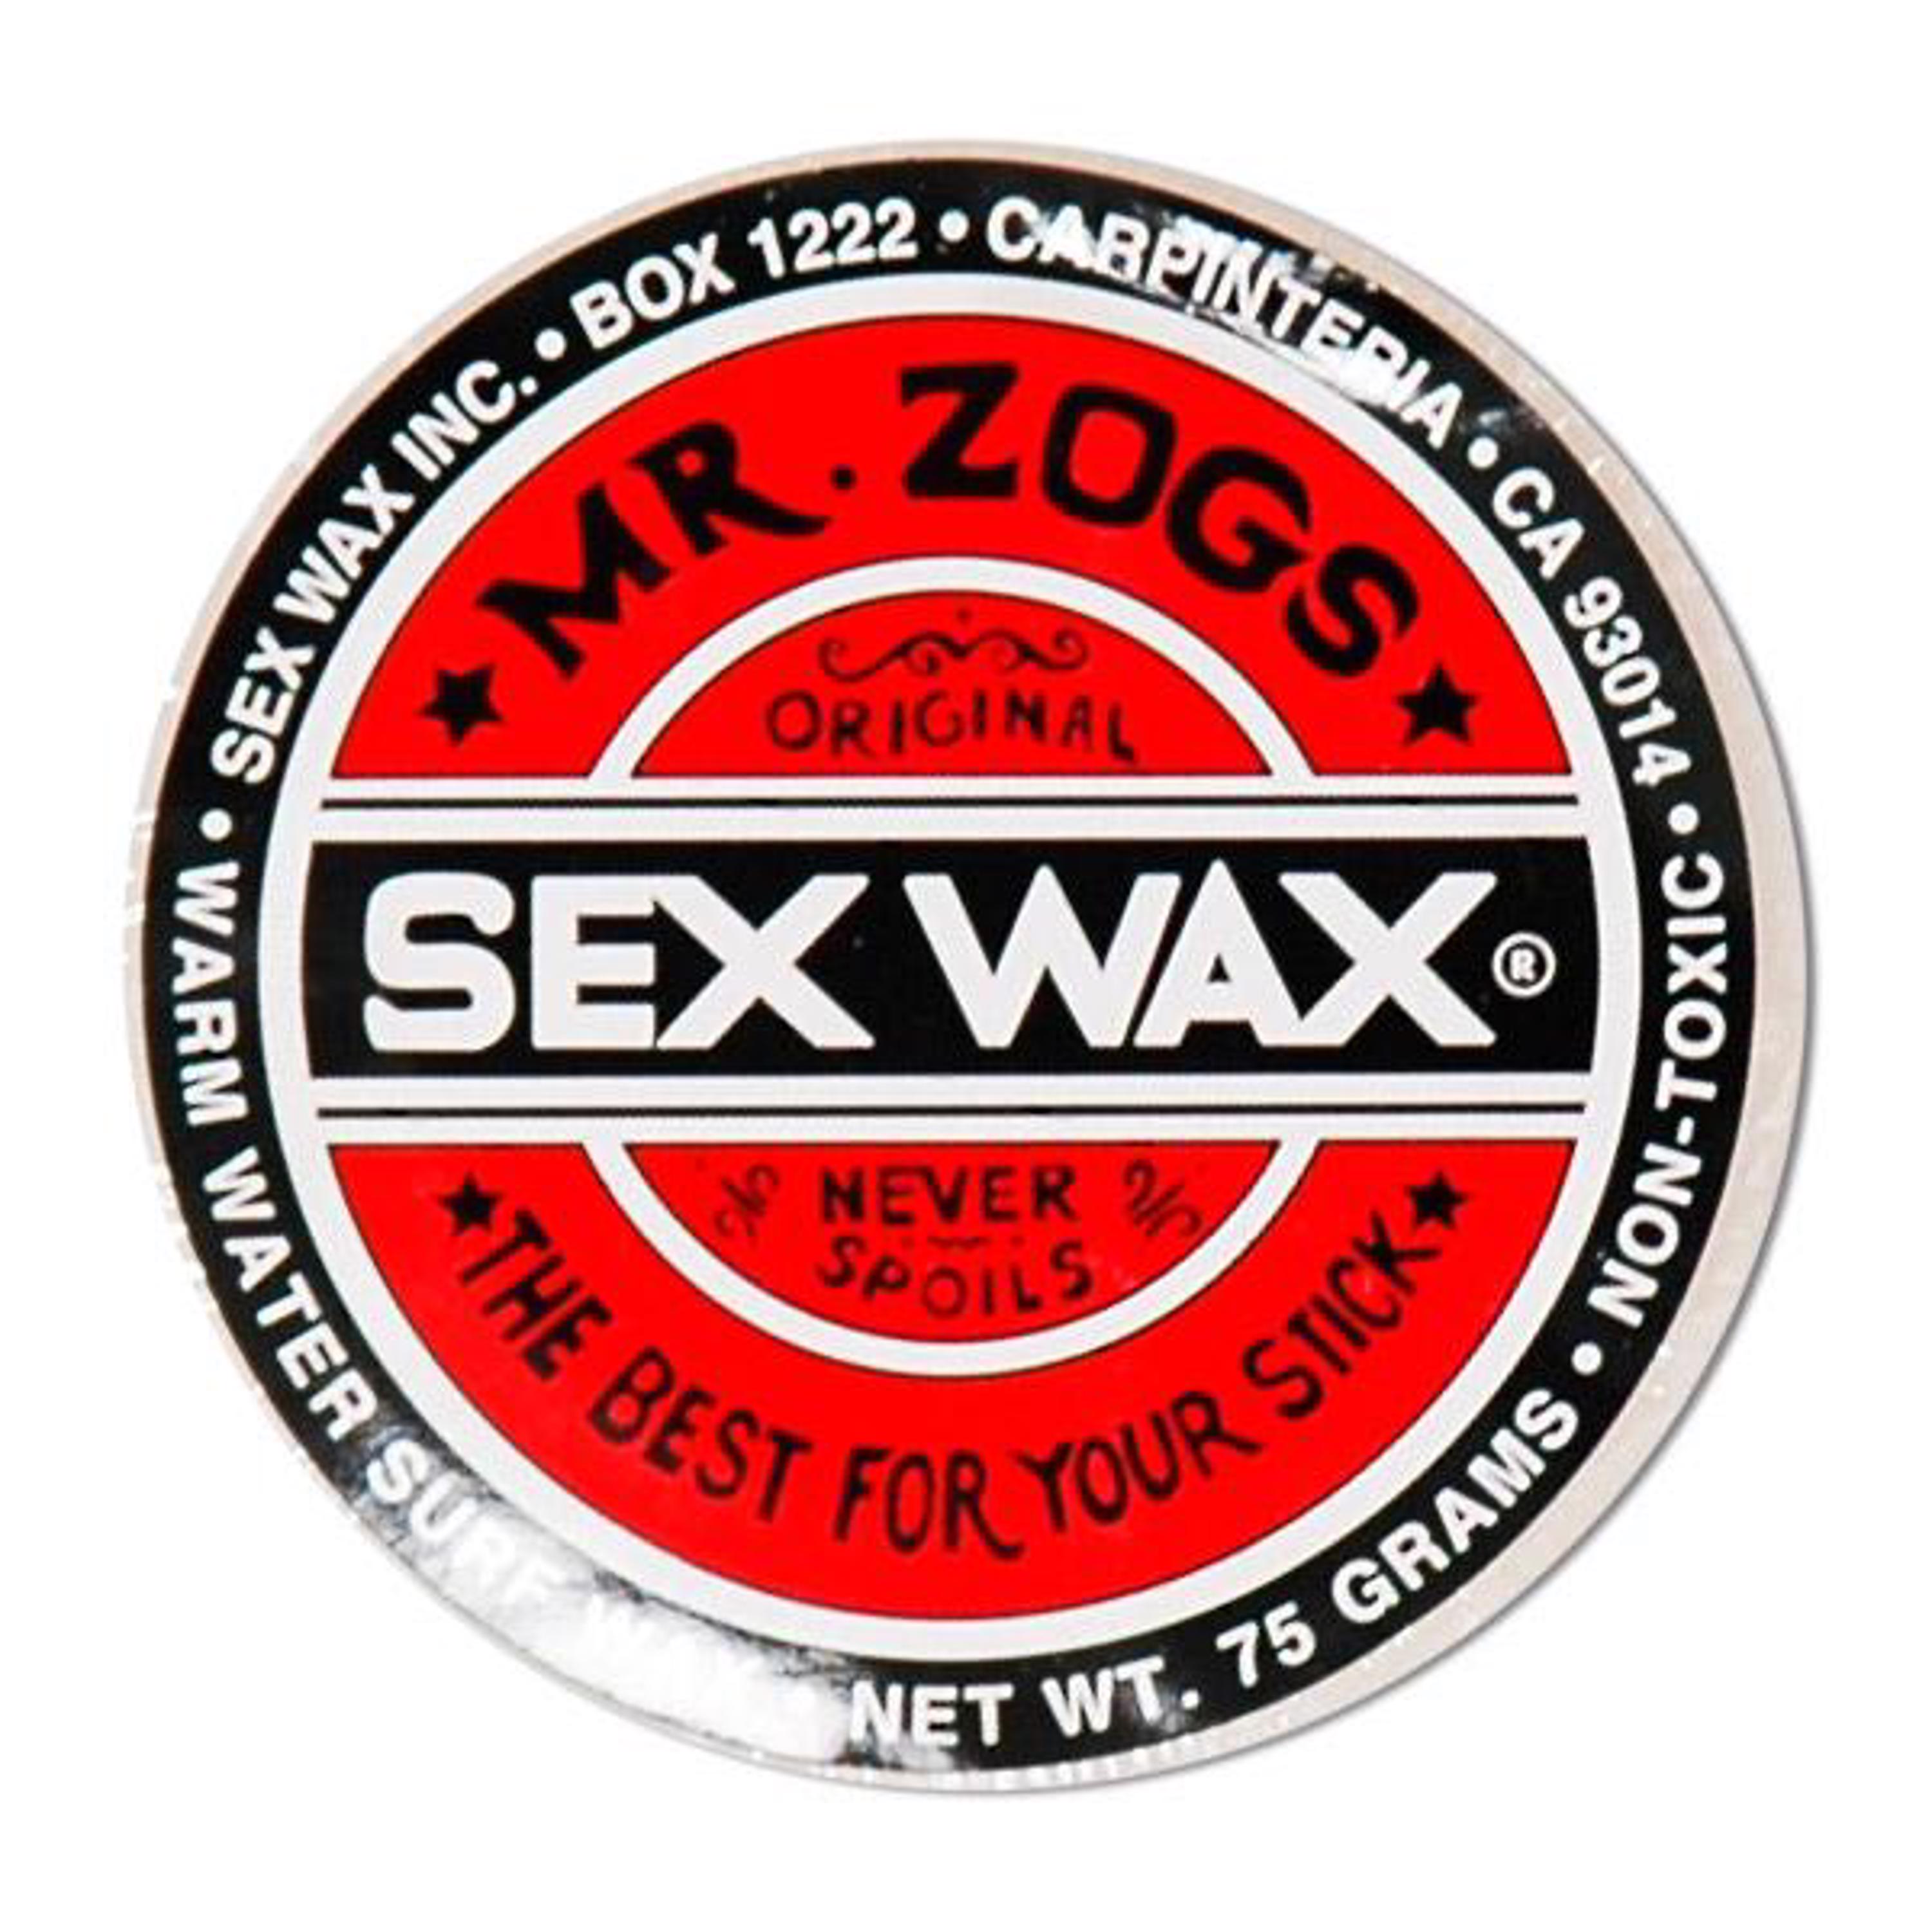 Sex Wax Rub-On Snowboard Wax - Crazy Dude